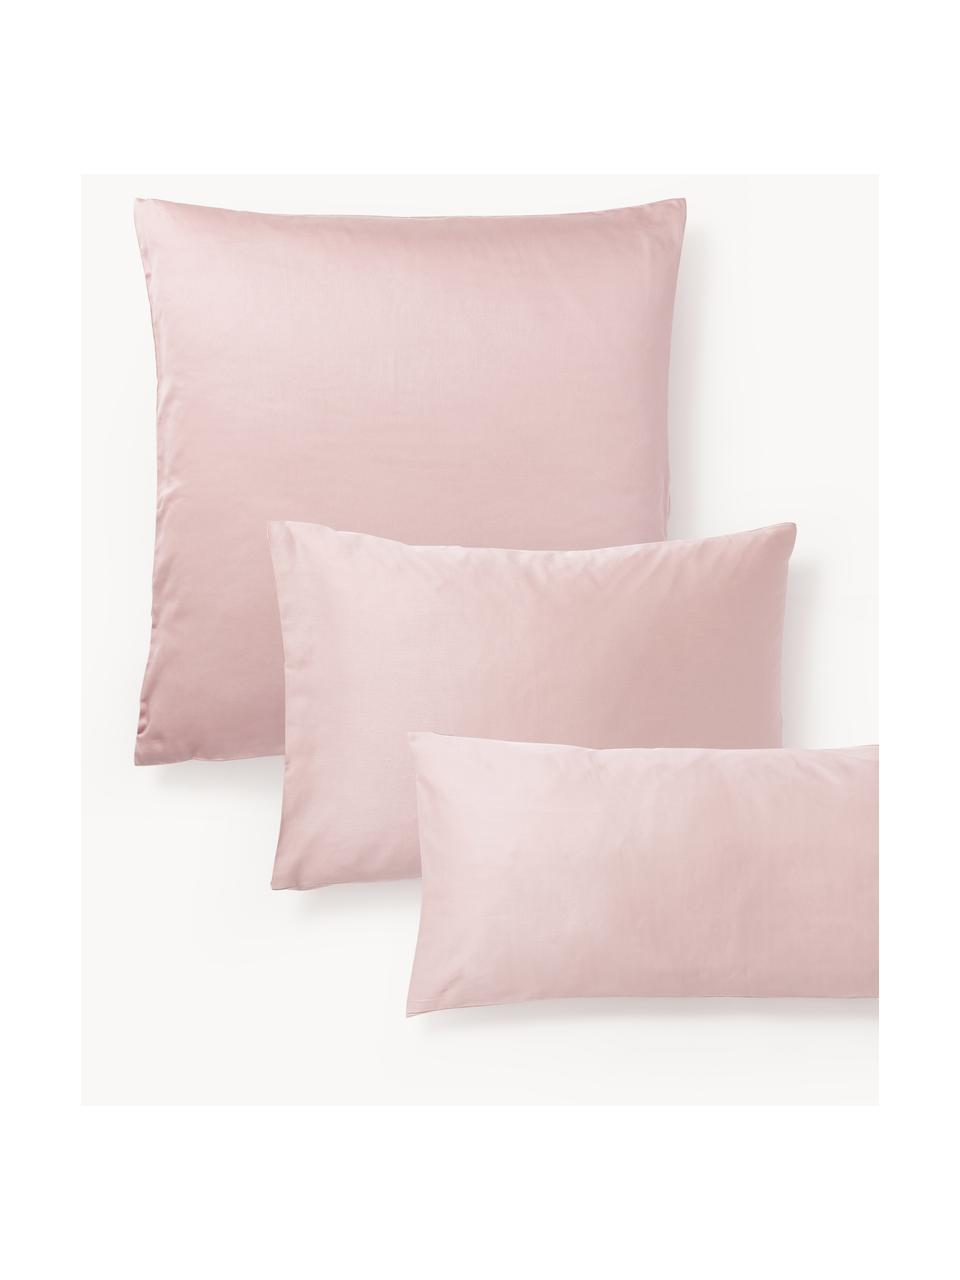 Poszewka na poduszkę z satyny bawełnianej Comfort, Blady różowy, S 40 x D 80 cm